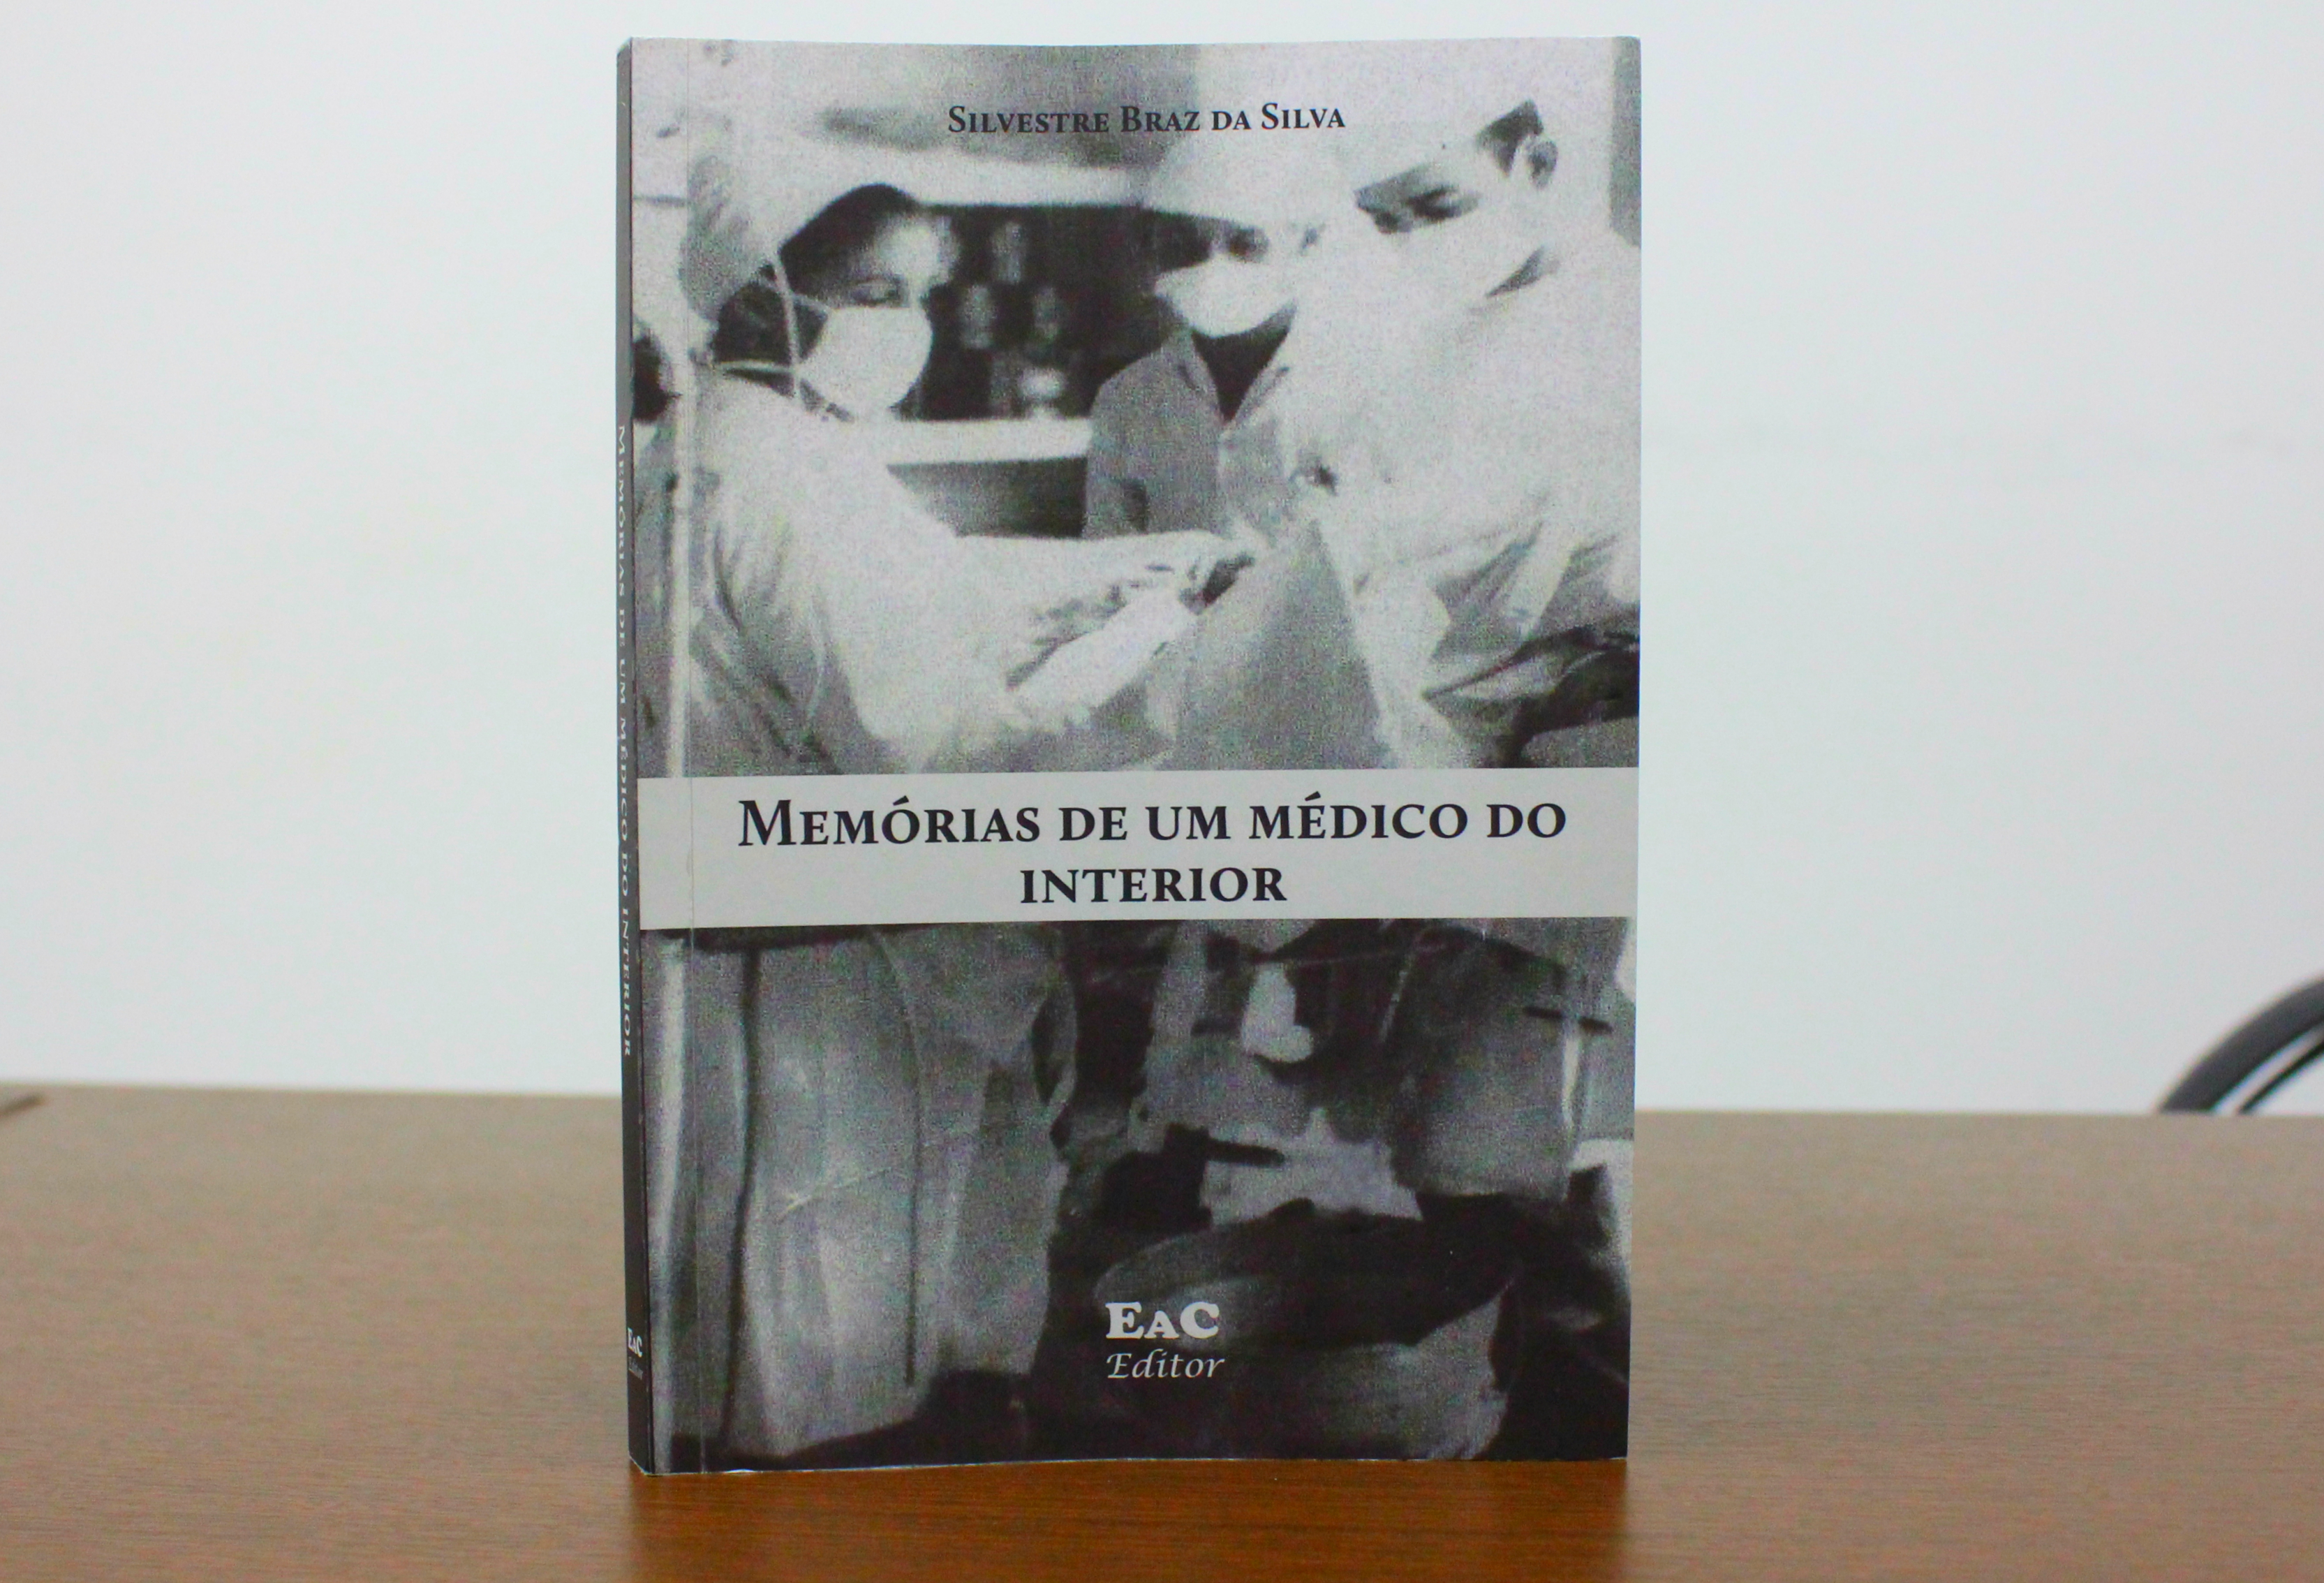 Silvestre Braz da Silva lança livro nesta segunda-feira (10) em Rio Branco